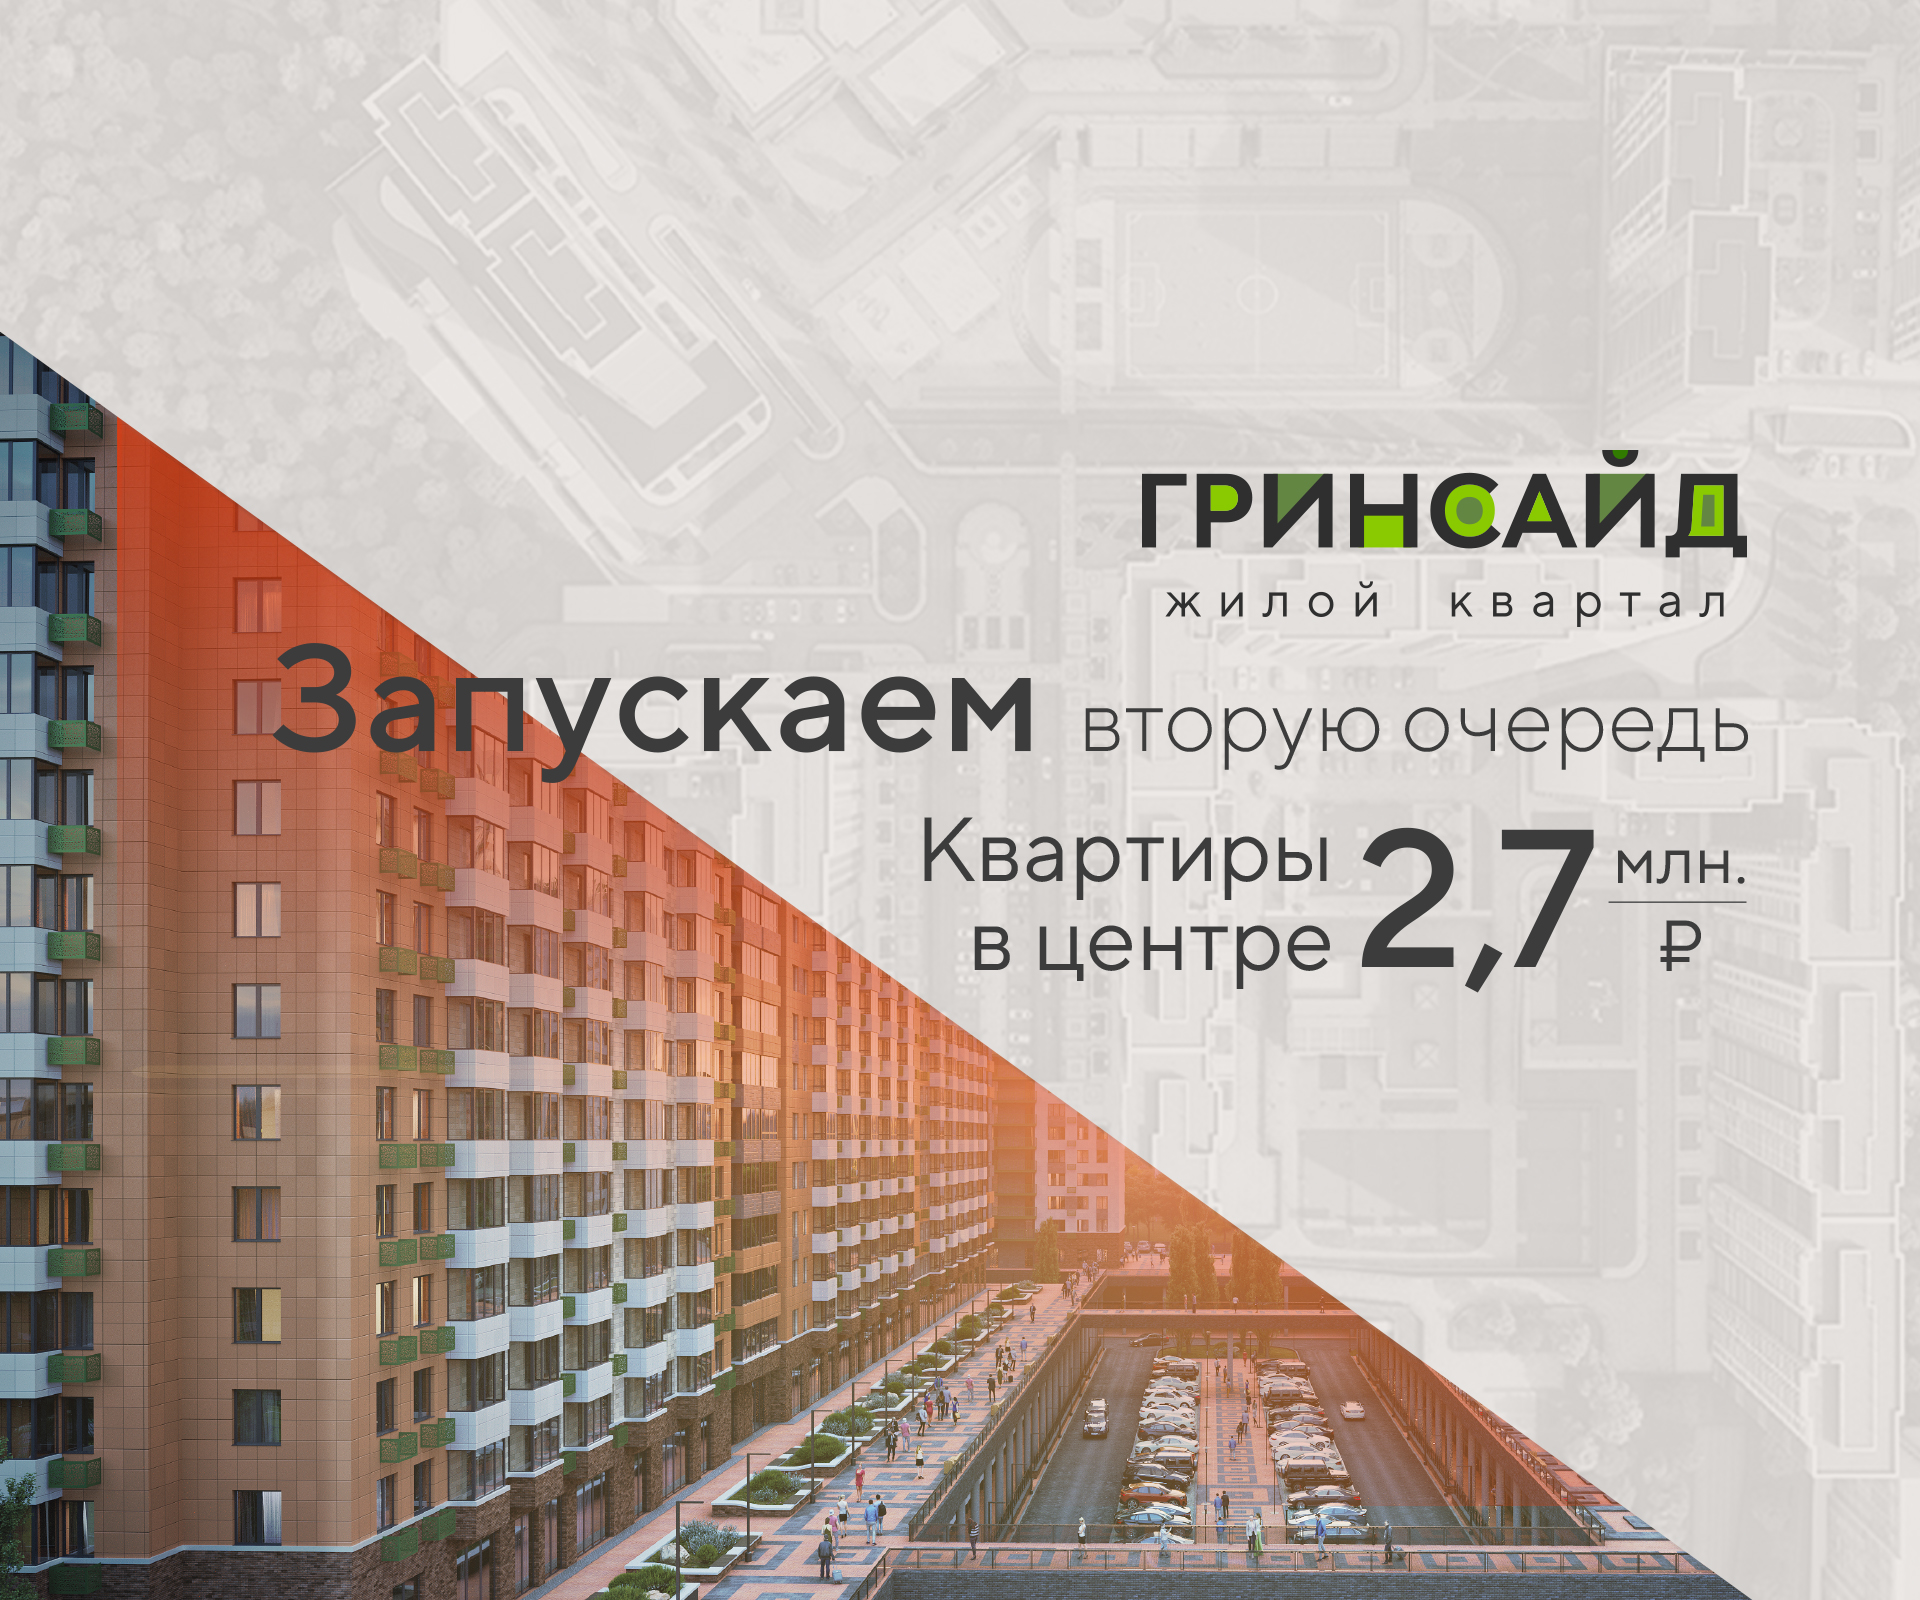 Старт строительства II очереди ЖК «Гринсайд»: квартиры от 2,7 млн